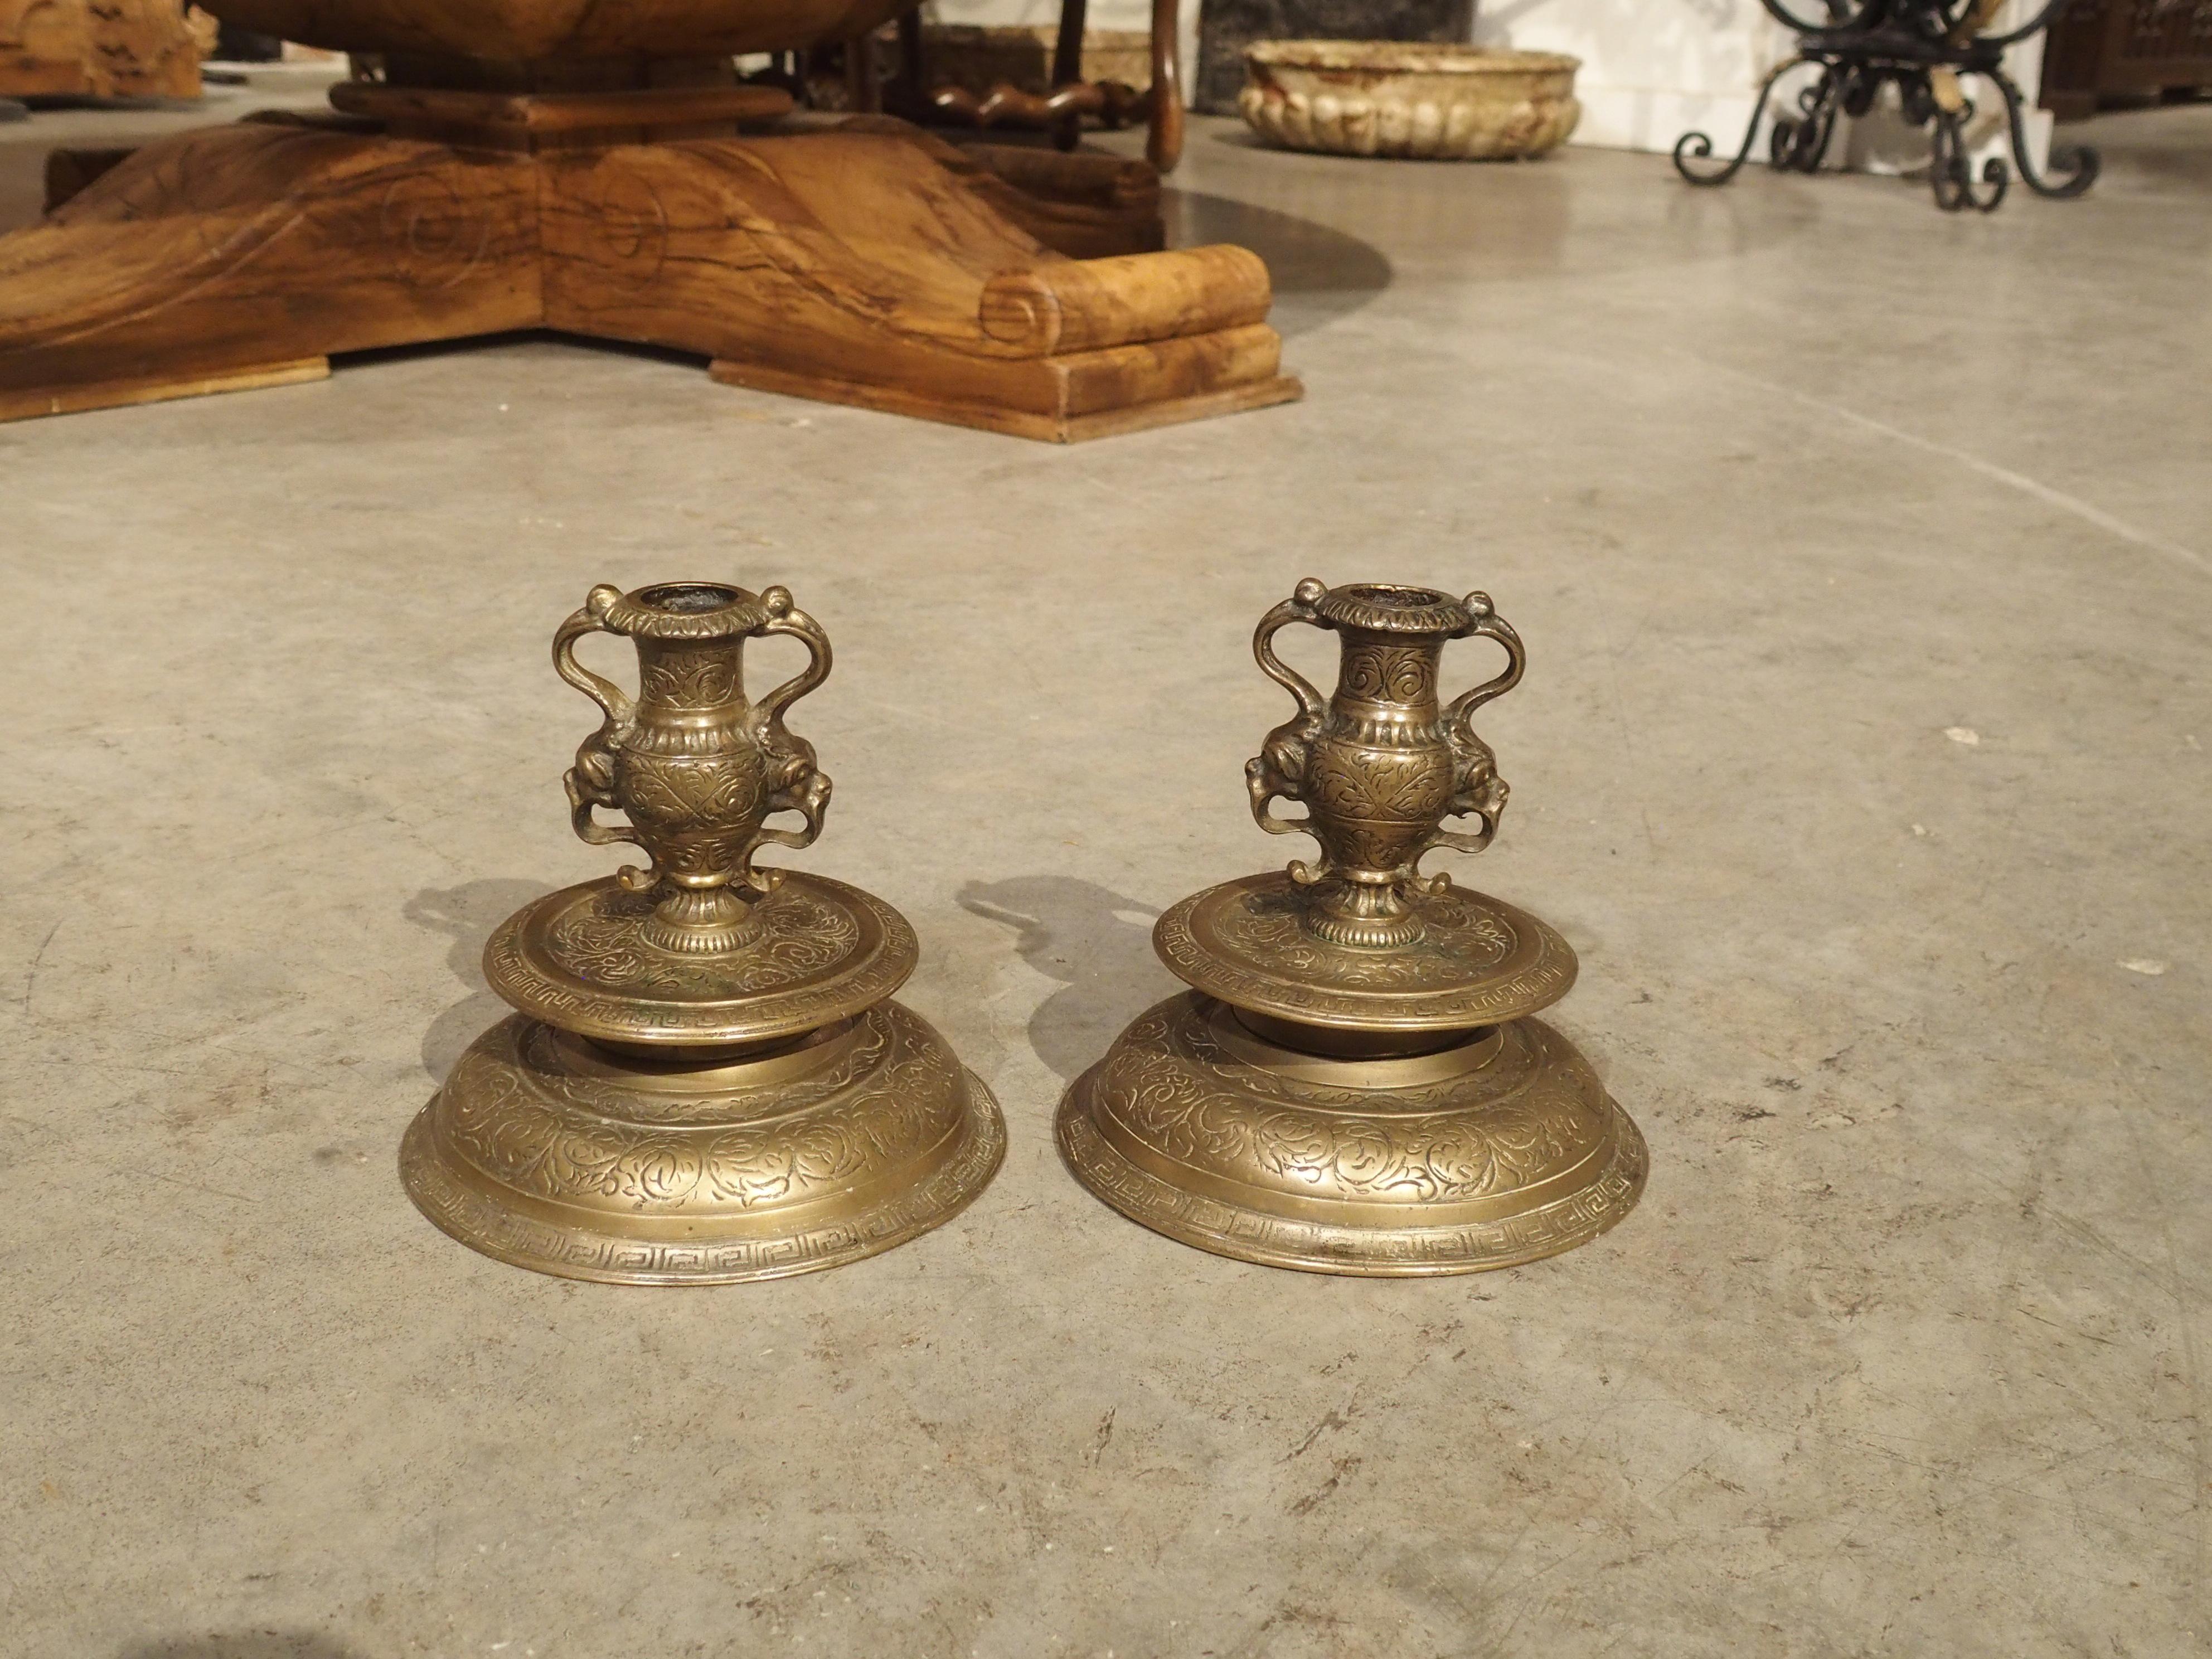 Cette paire de petits bougeoirs en bronze du XIXe siècle a été réalisée dans le style Renaissance.

La base circulaire moulée comporte deux anneaux de clés grecques, l'un sur la base inférieure et l'autre sur la bobèche surélevée. La clé grecque